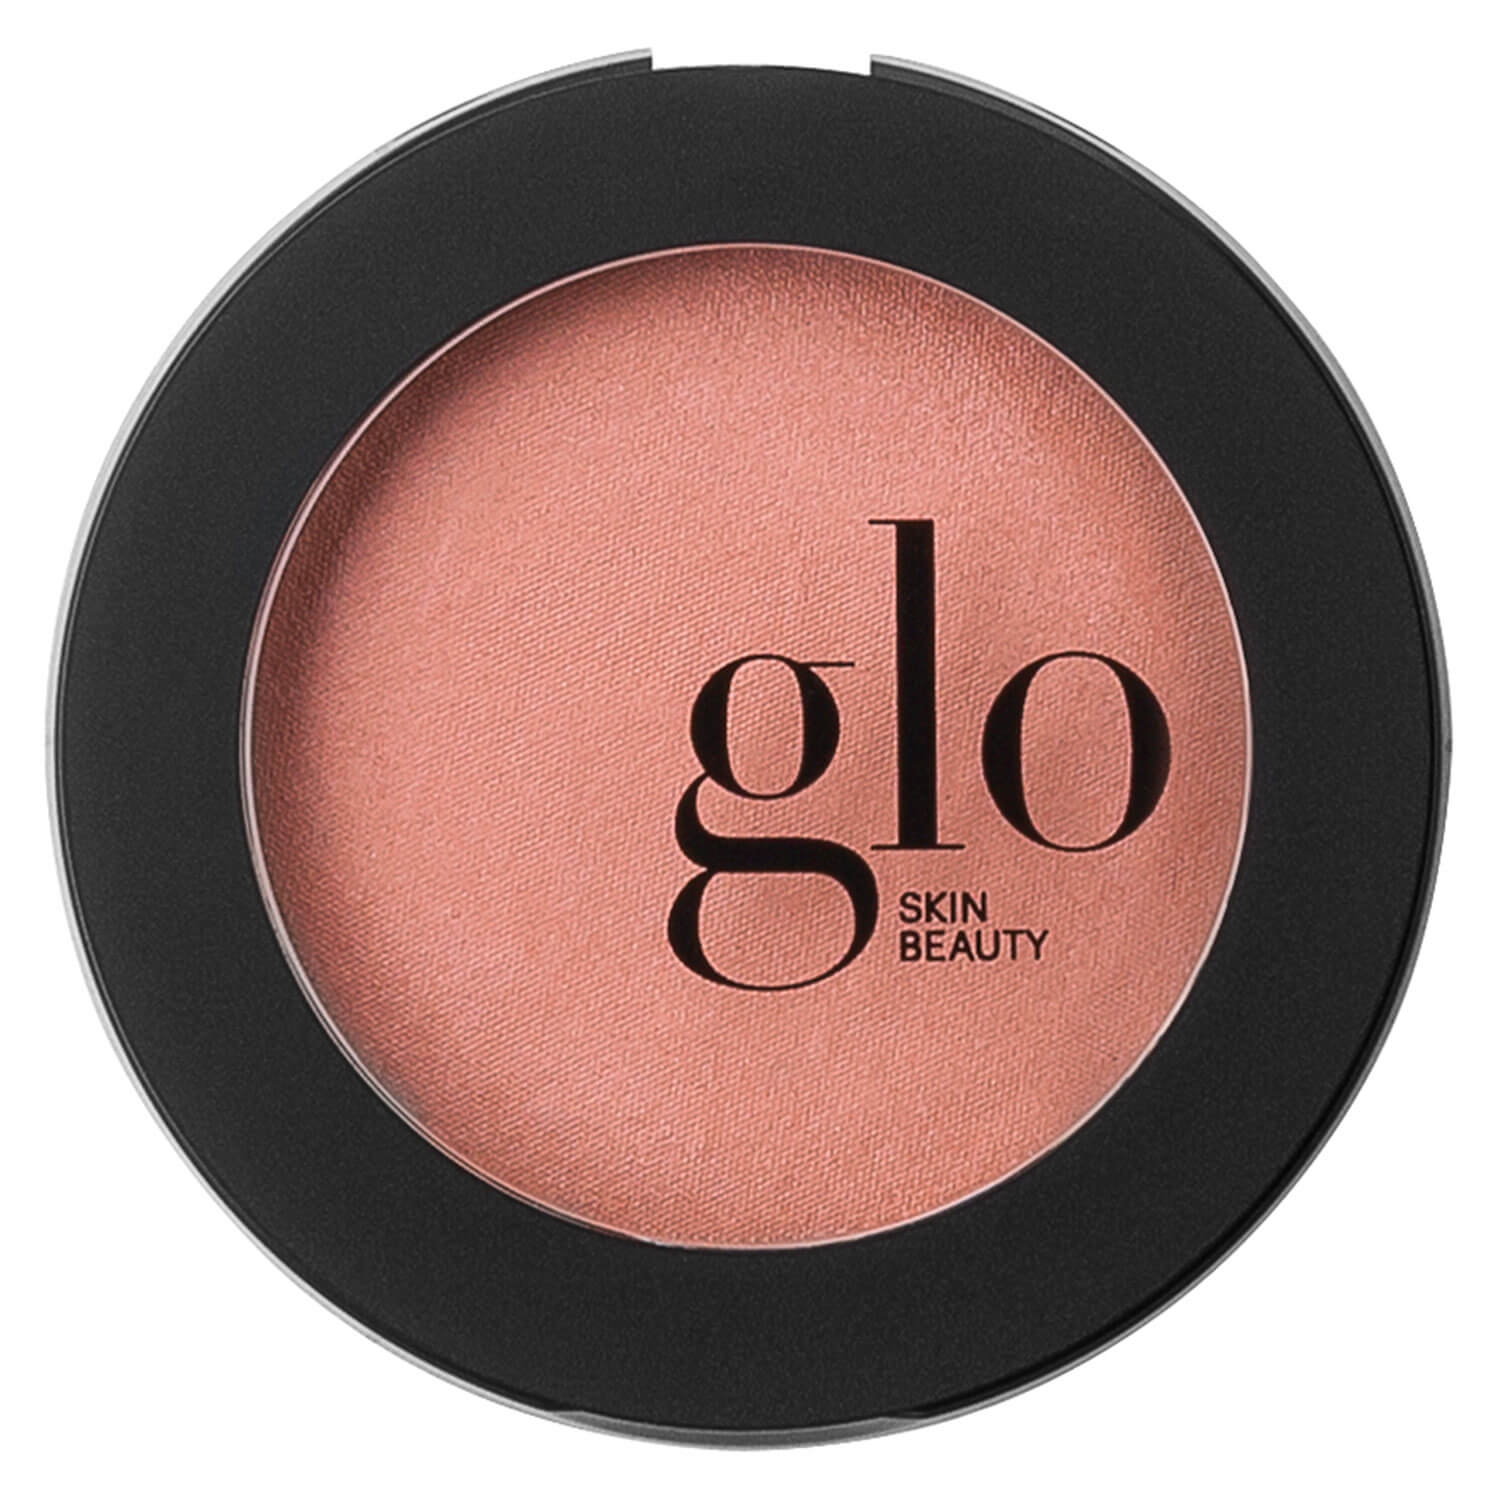 Produktbild von Glo Skin Beauty Blush - Blush Sweet